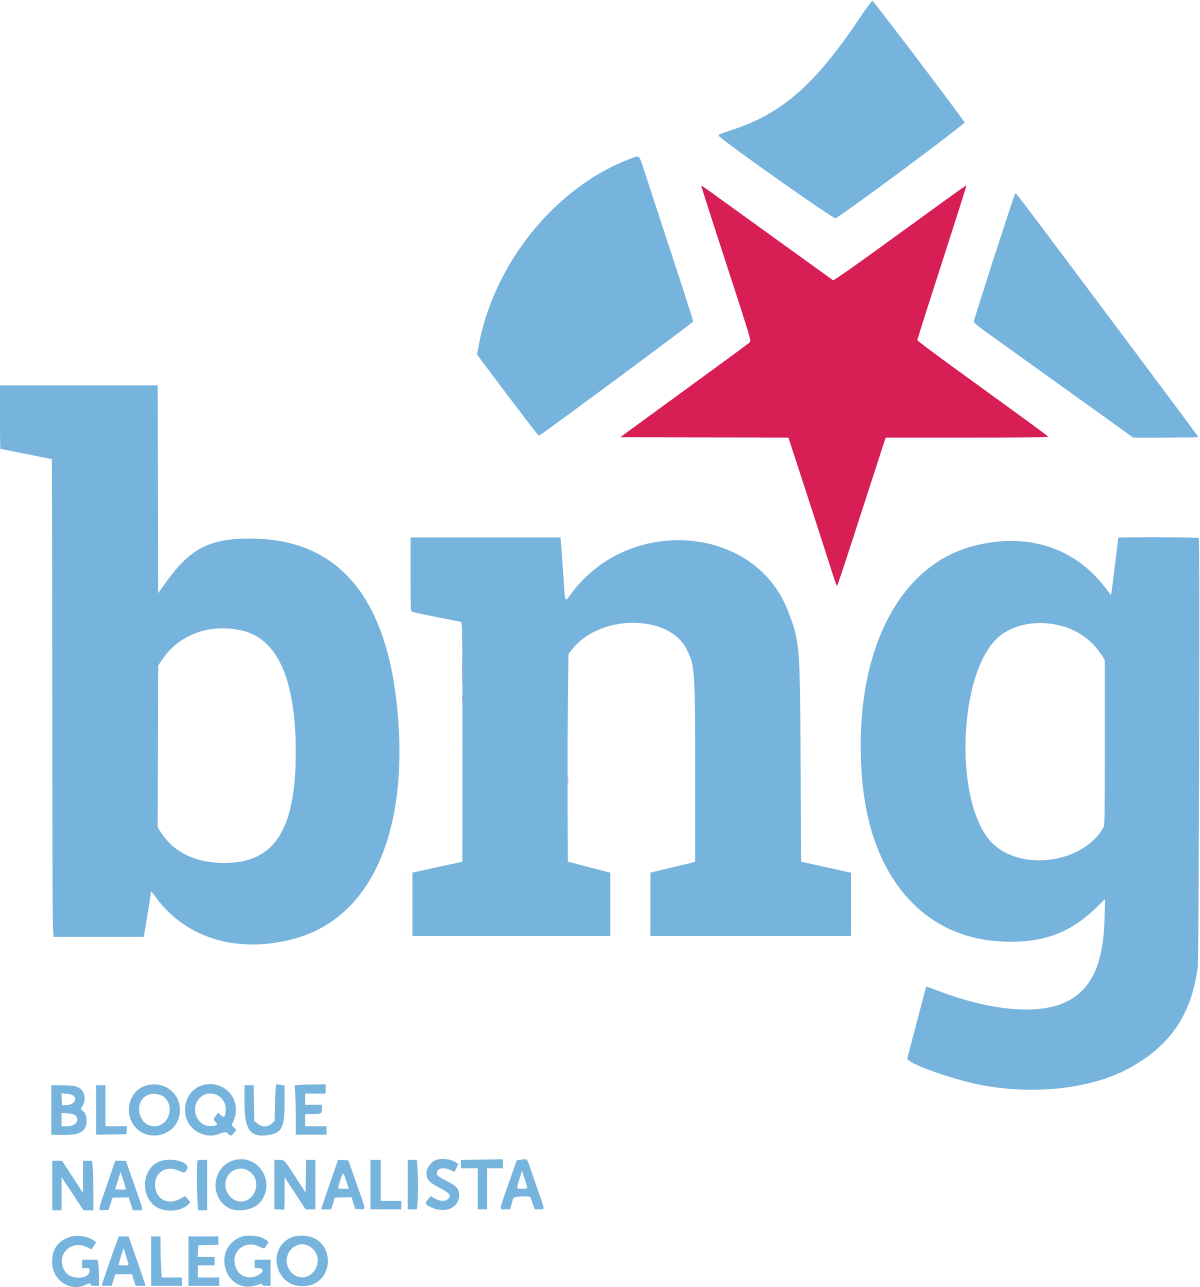 Bloque Nacionalista Galego - Wikipedia, la enciclopedia libre